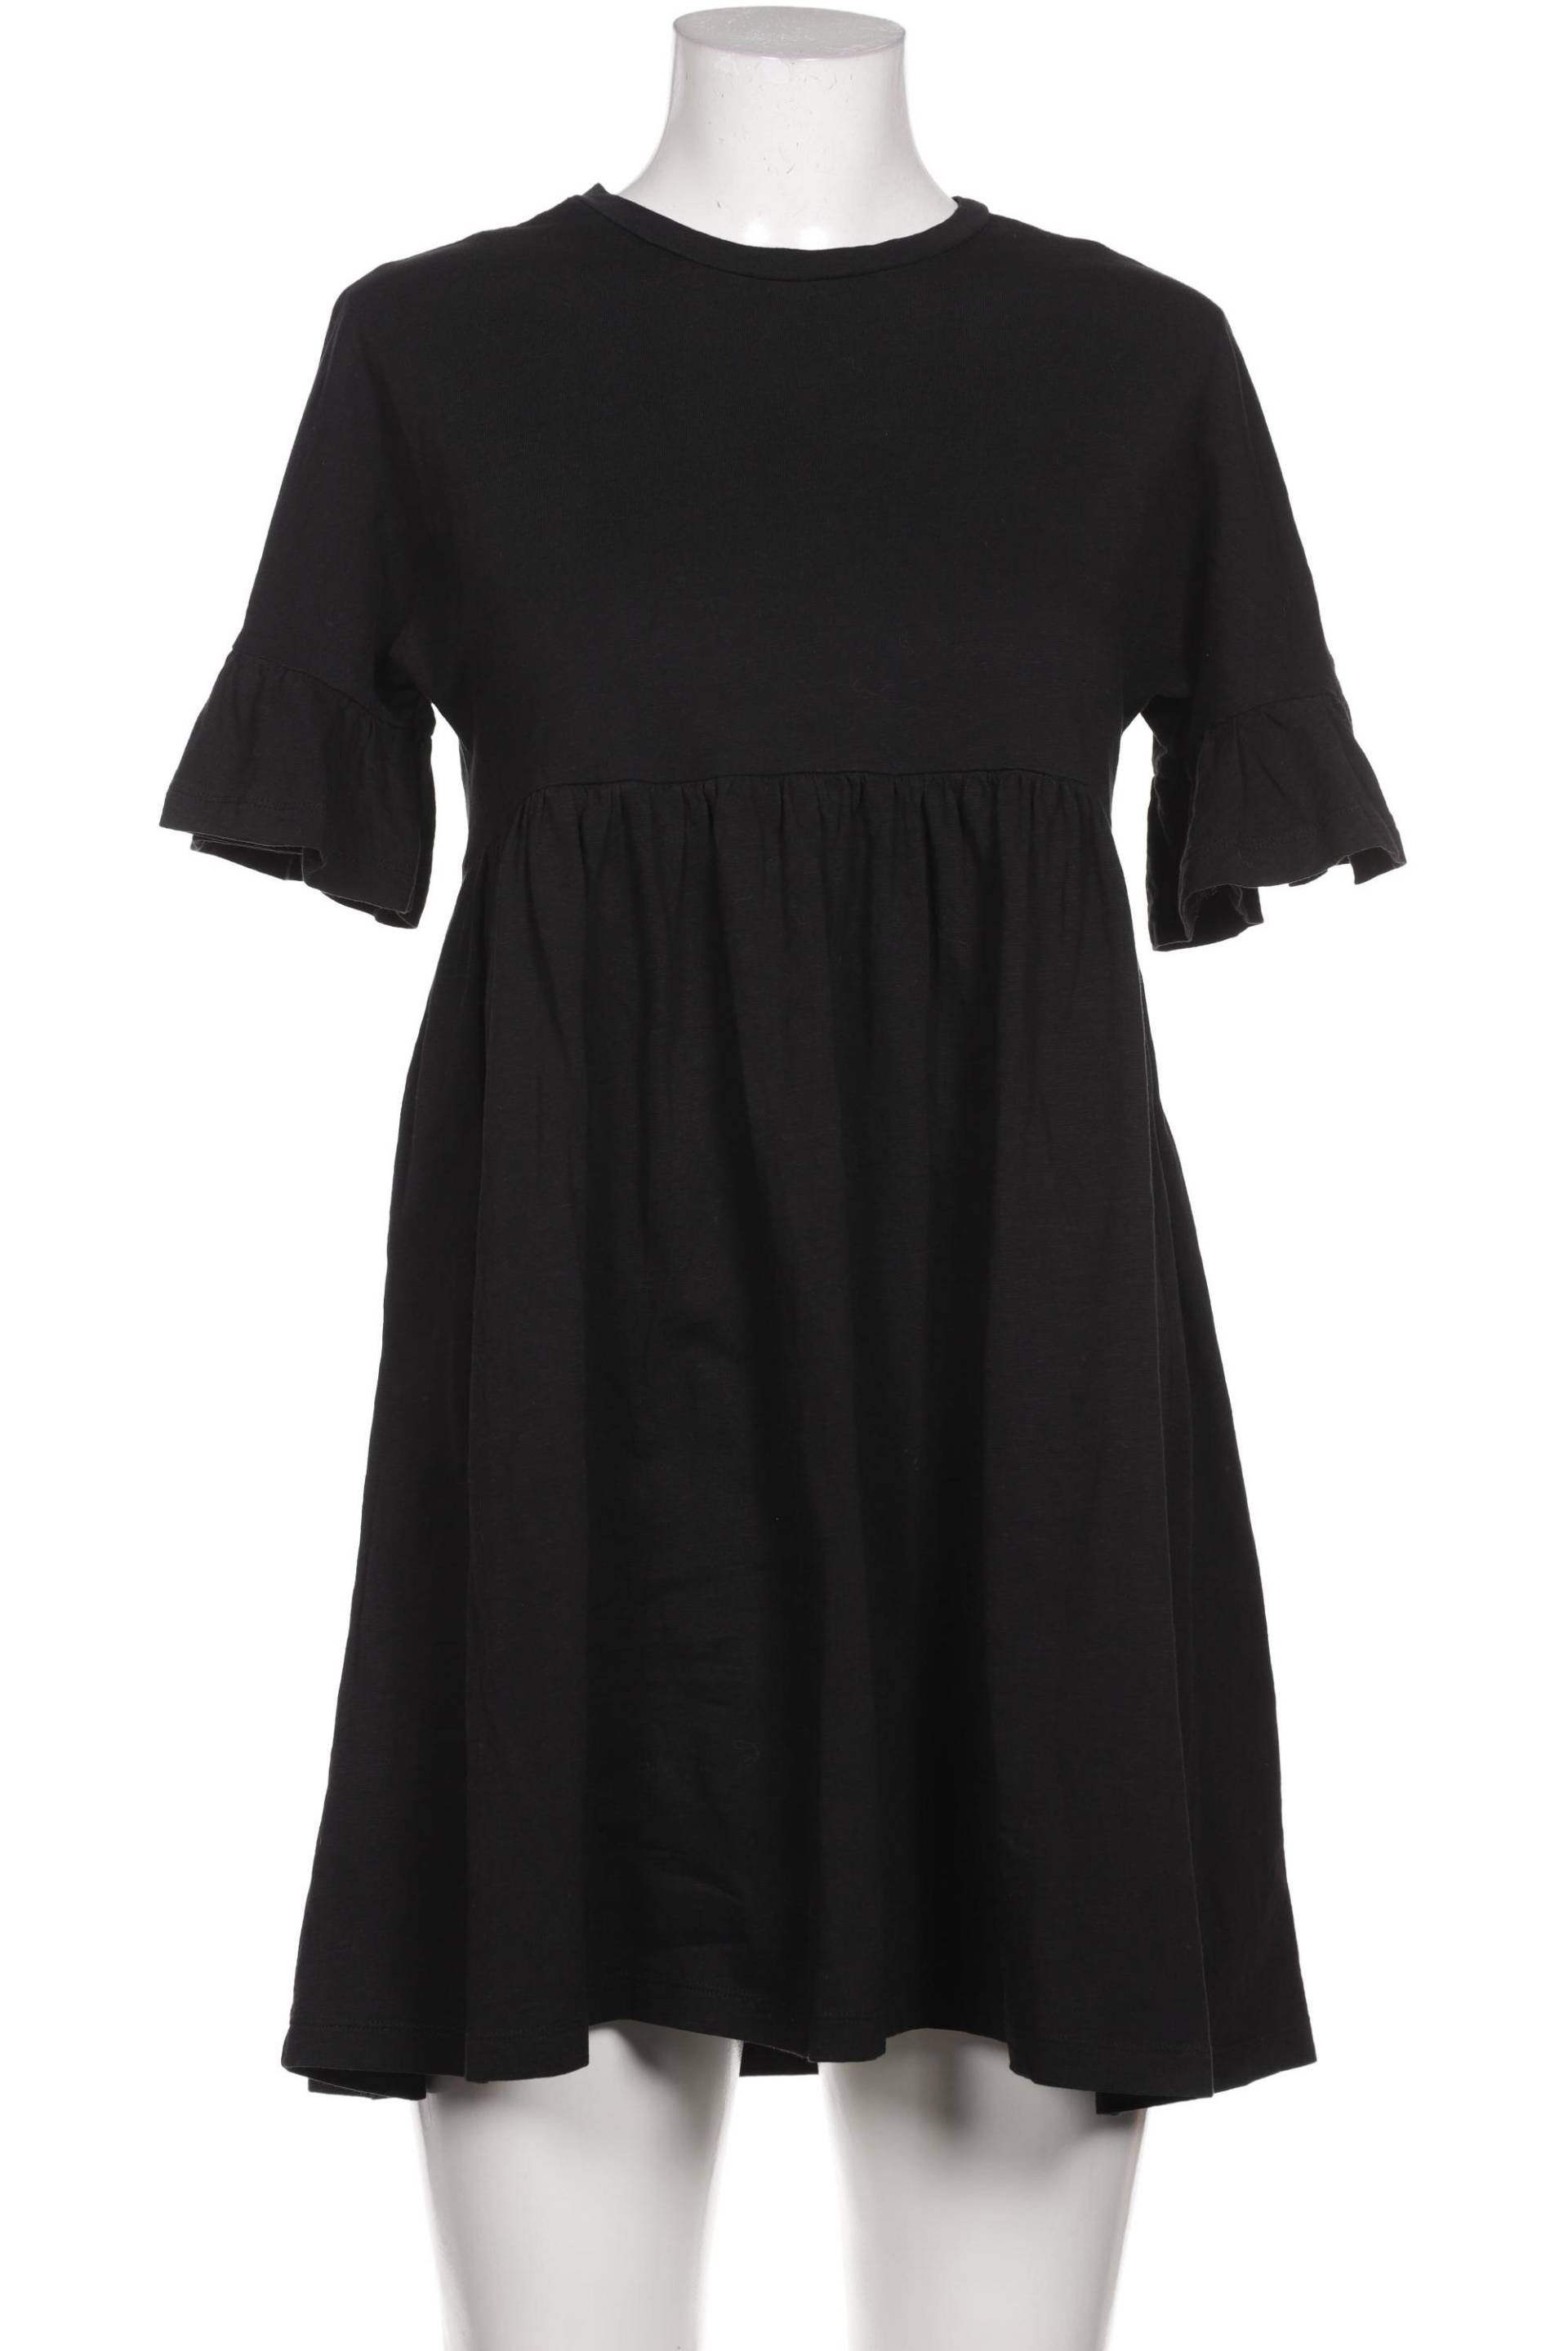 asos Damen Kleid, schwarz von asos